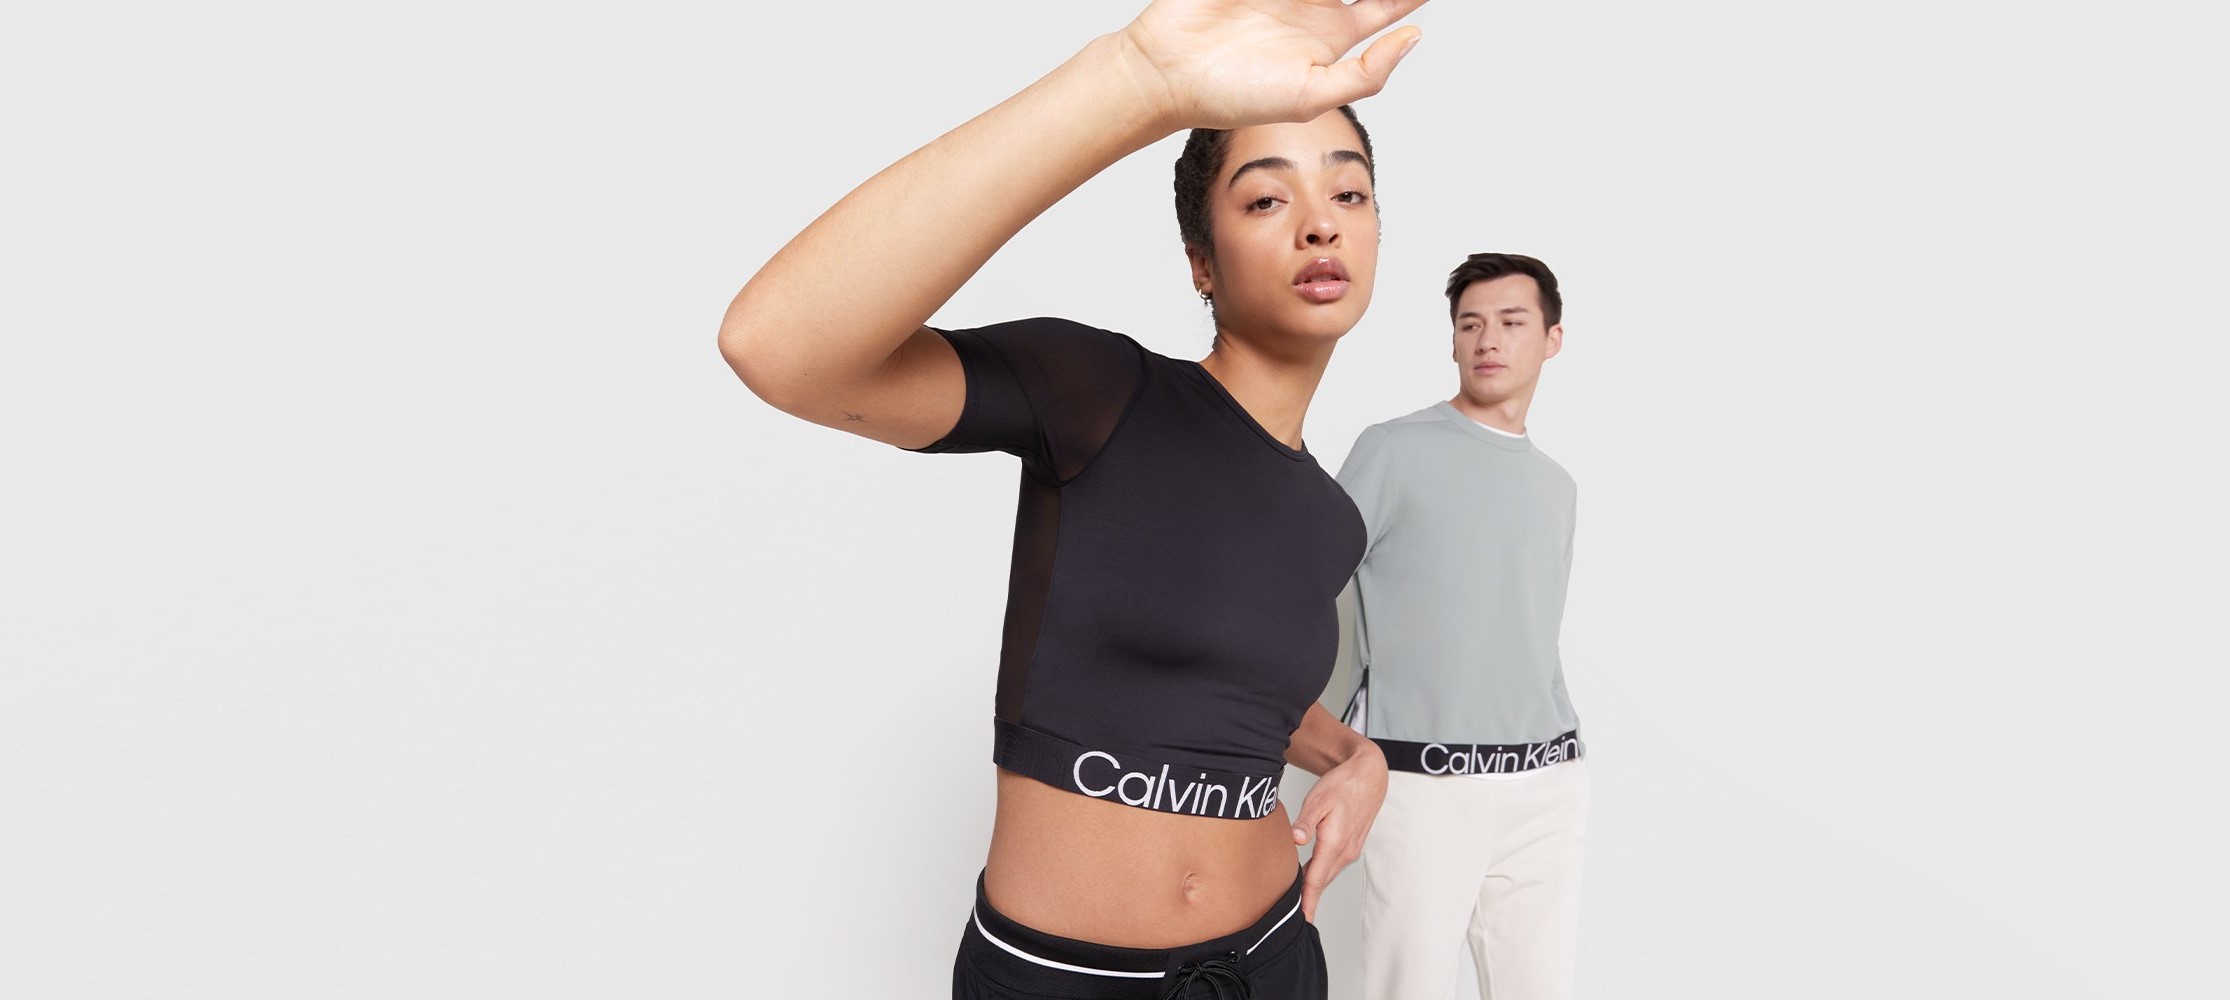 Promos Calvin Klein pour Femme, Offres et Réductions